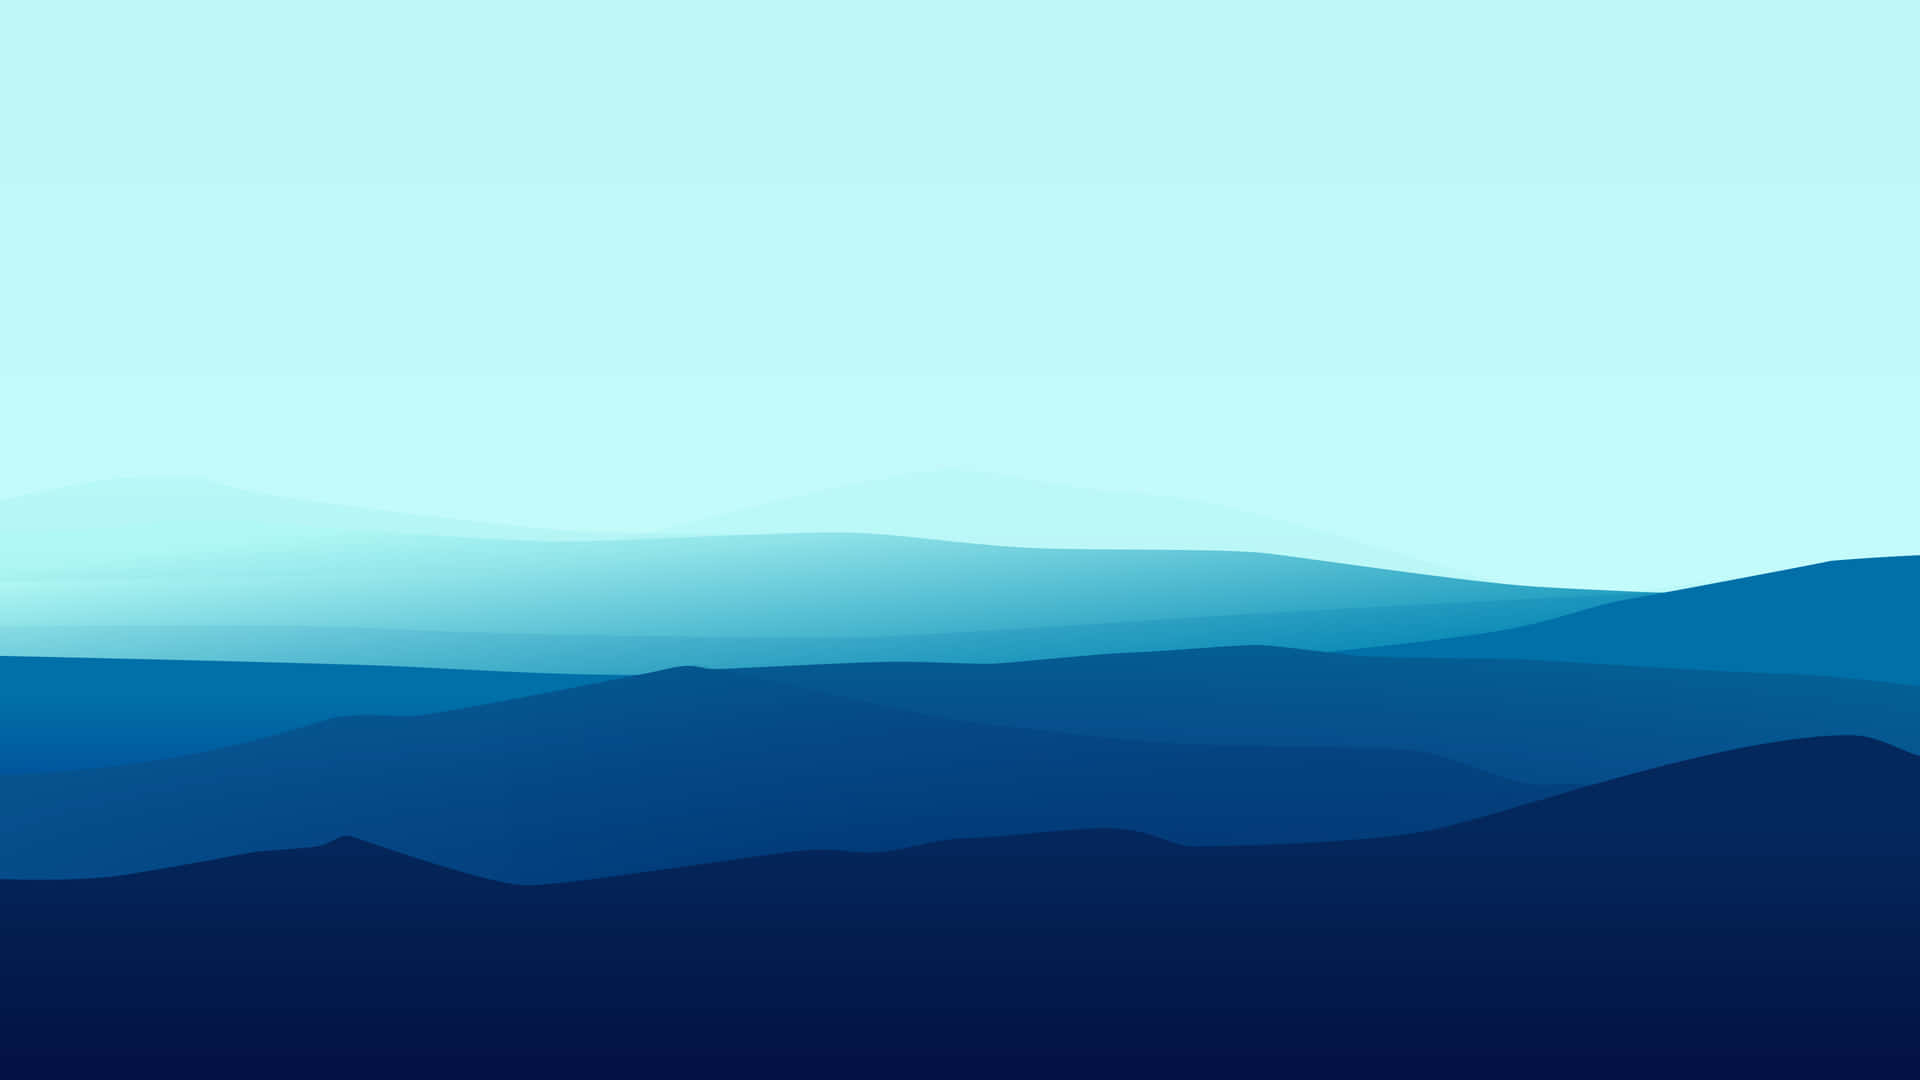 Enbild Av Ett Minimalistiskt Berg Med Lugnande Blåa Toner. Wallpaper